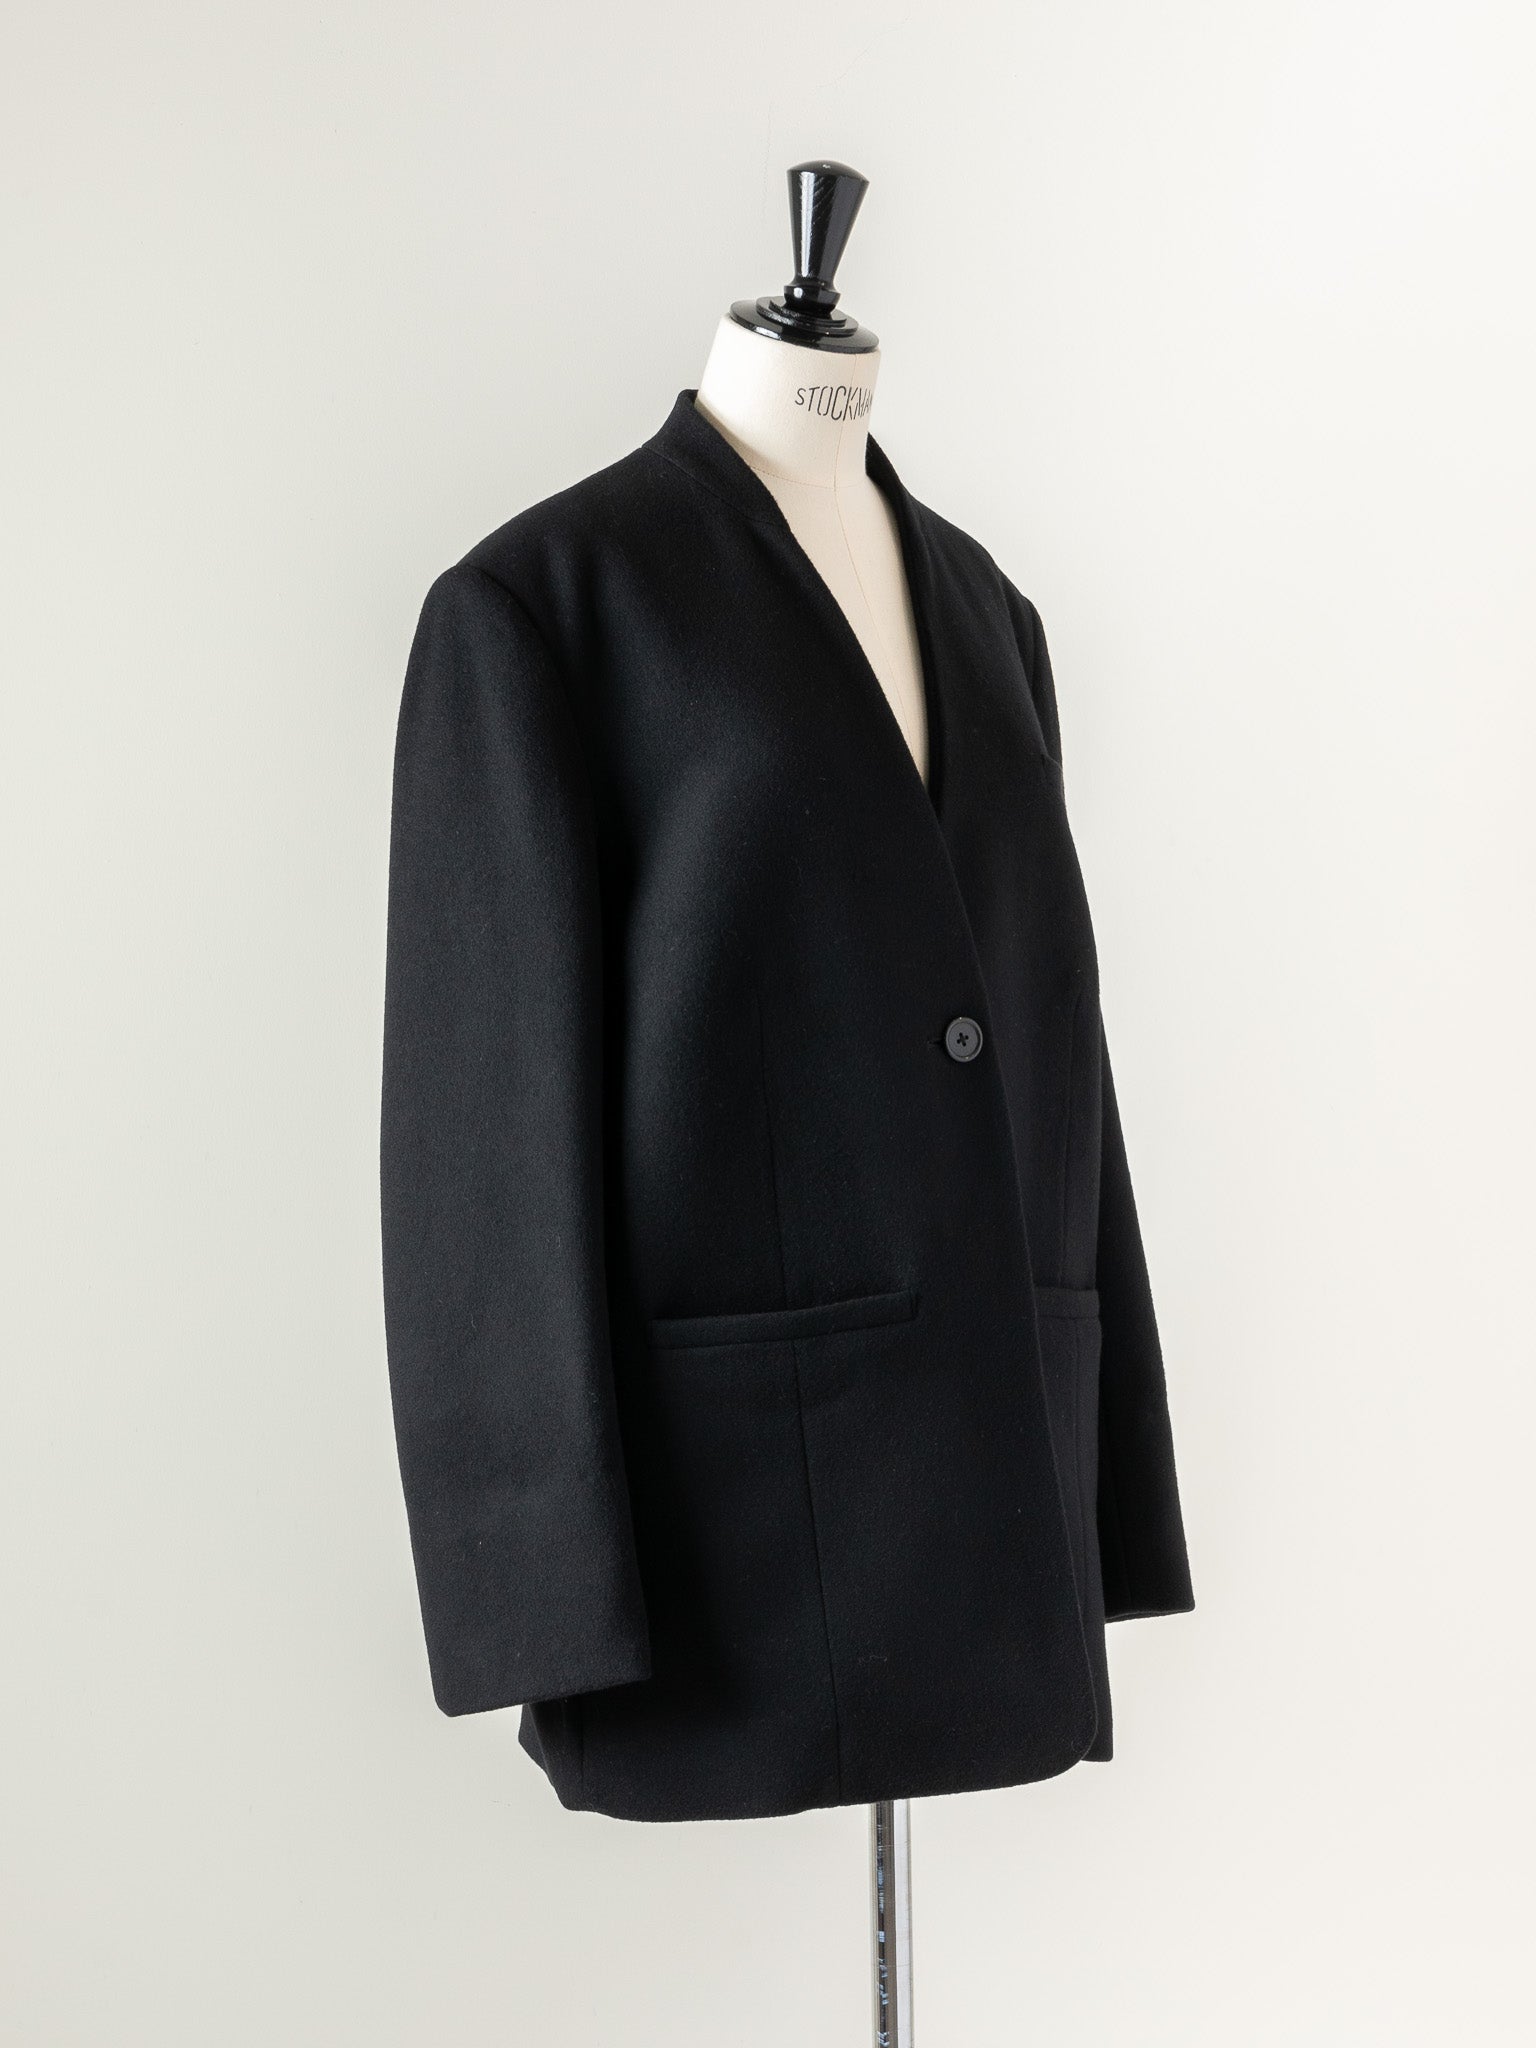 約585㎝digne collar less jacket (white)